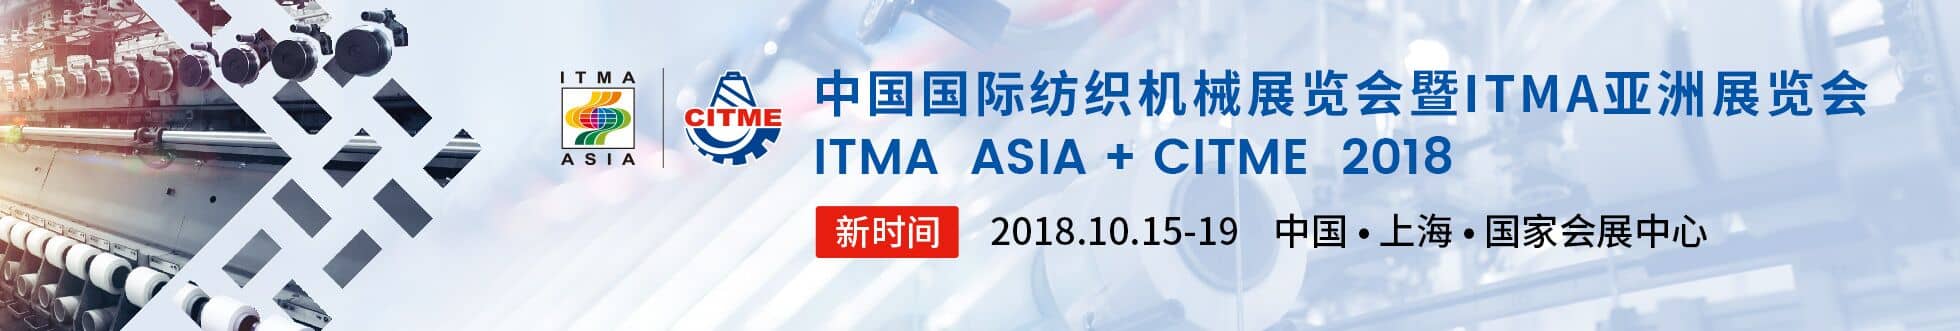 2018中国国际纺织机械展览会暨ITMA亚洲展览会信息验证